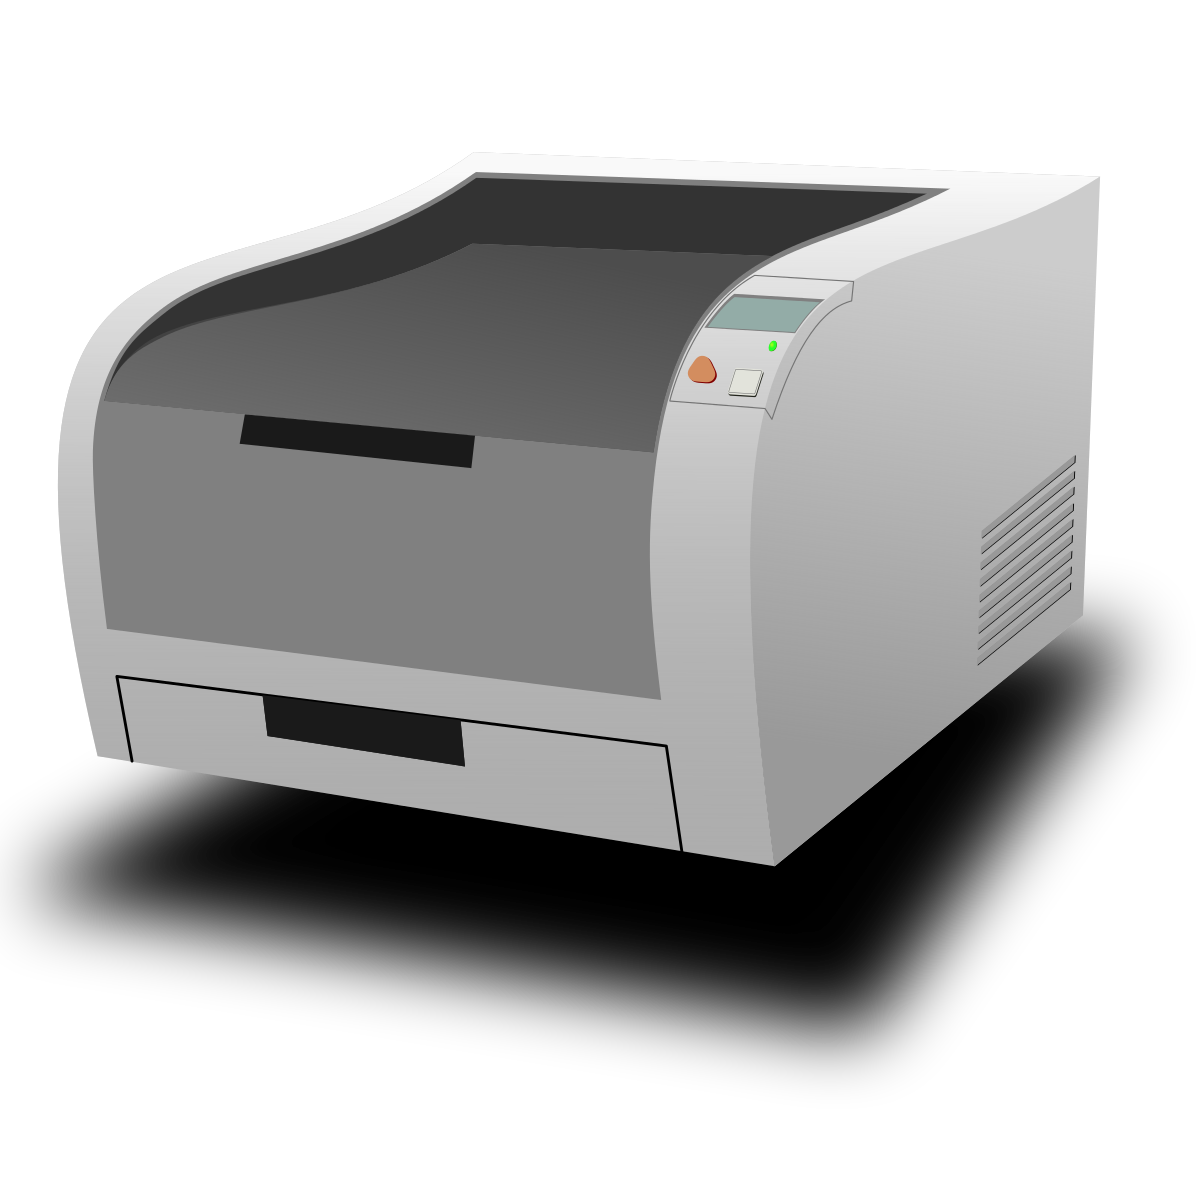 Лазерный принтер для фотографий. Принтер лазерный вектор. Принтер лазерный Lazer Set 1320. Принтер лазерный ксерокс 7435. Лазерный принтер презентация.